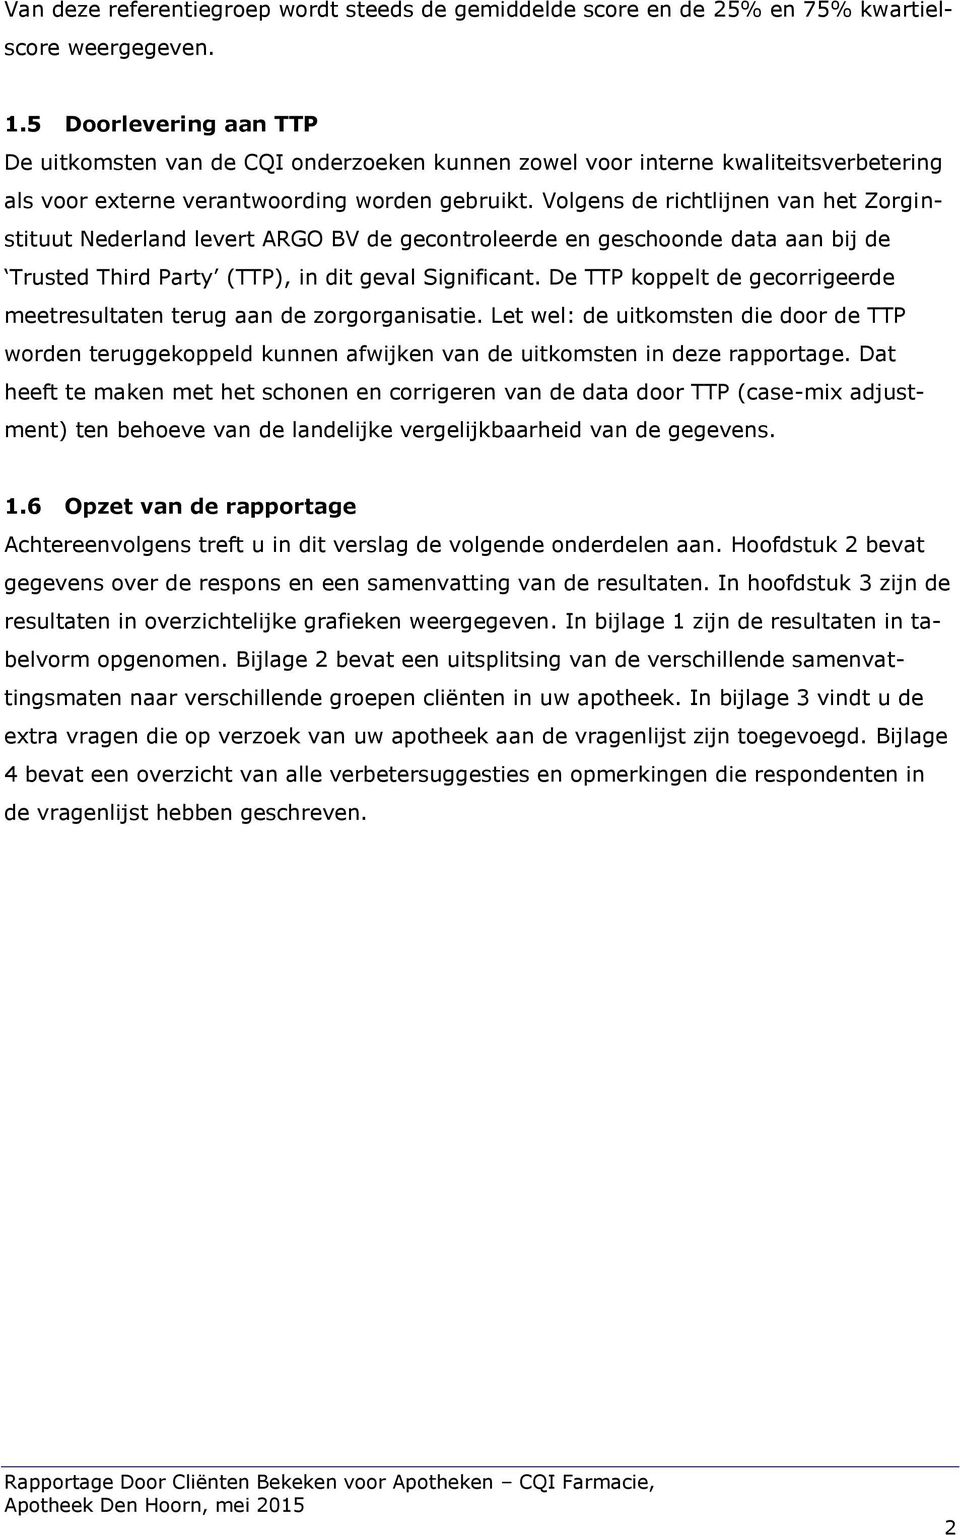 Volgens de richtlijnen van het Zorginstituut Nederland levert ARGO BV de gecontroleerde en geschoonde data aan bij de Trusted Third Party (TTP), in dit geval Significant.